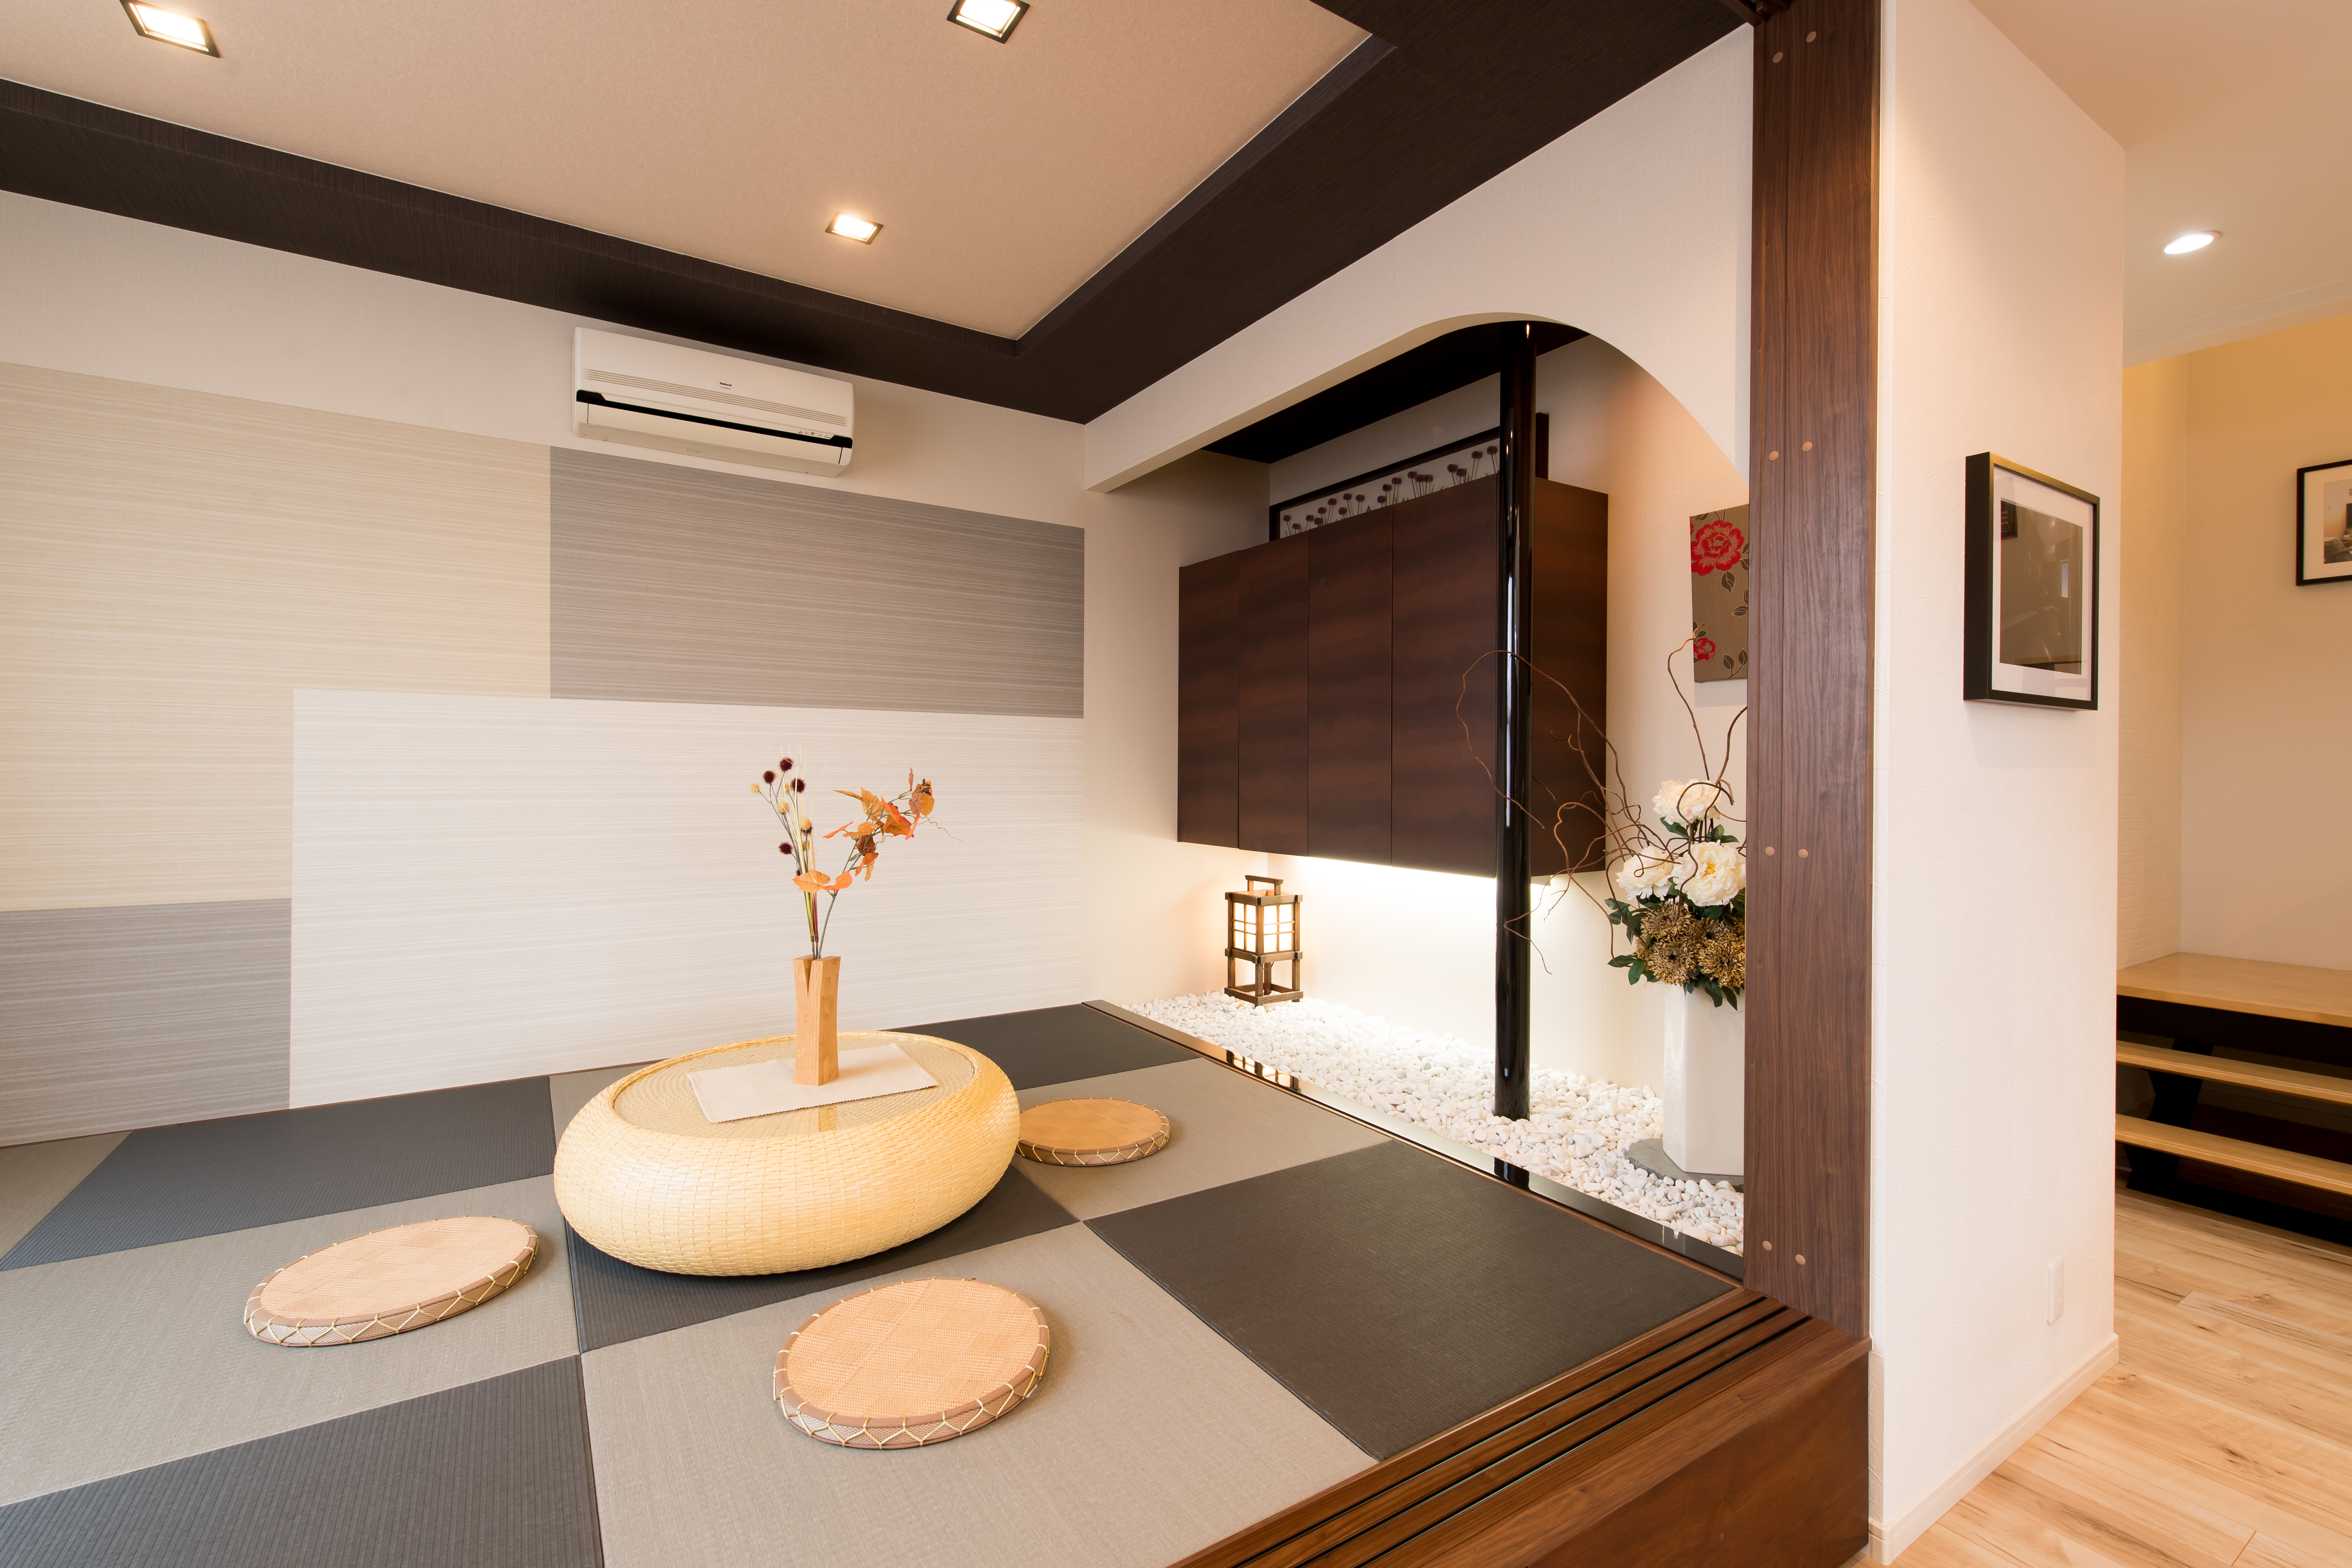 おしゃれな空間 和室 和歌山県和歌山市の注文住宅 新築一戸建てならマルコーホーム